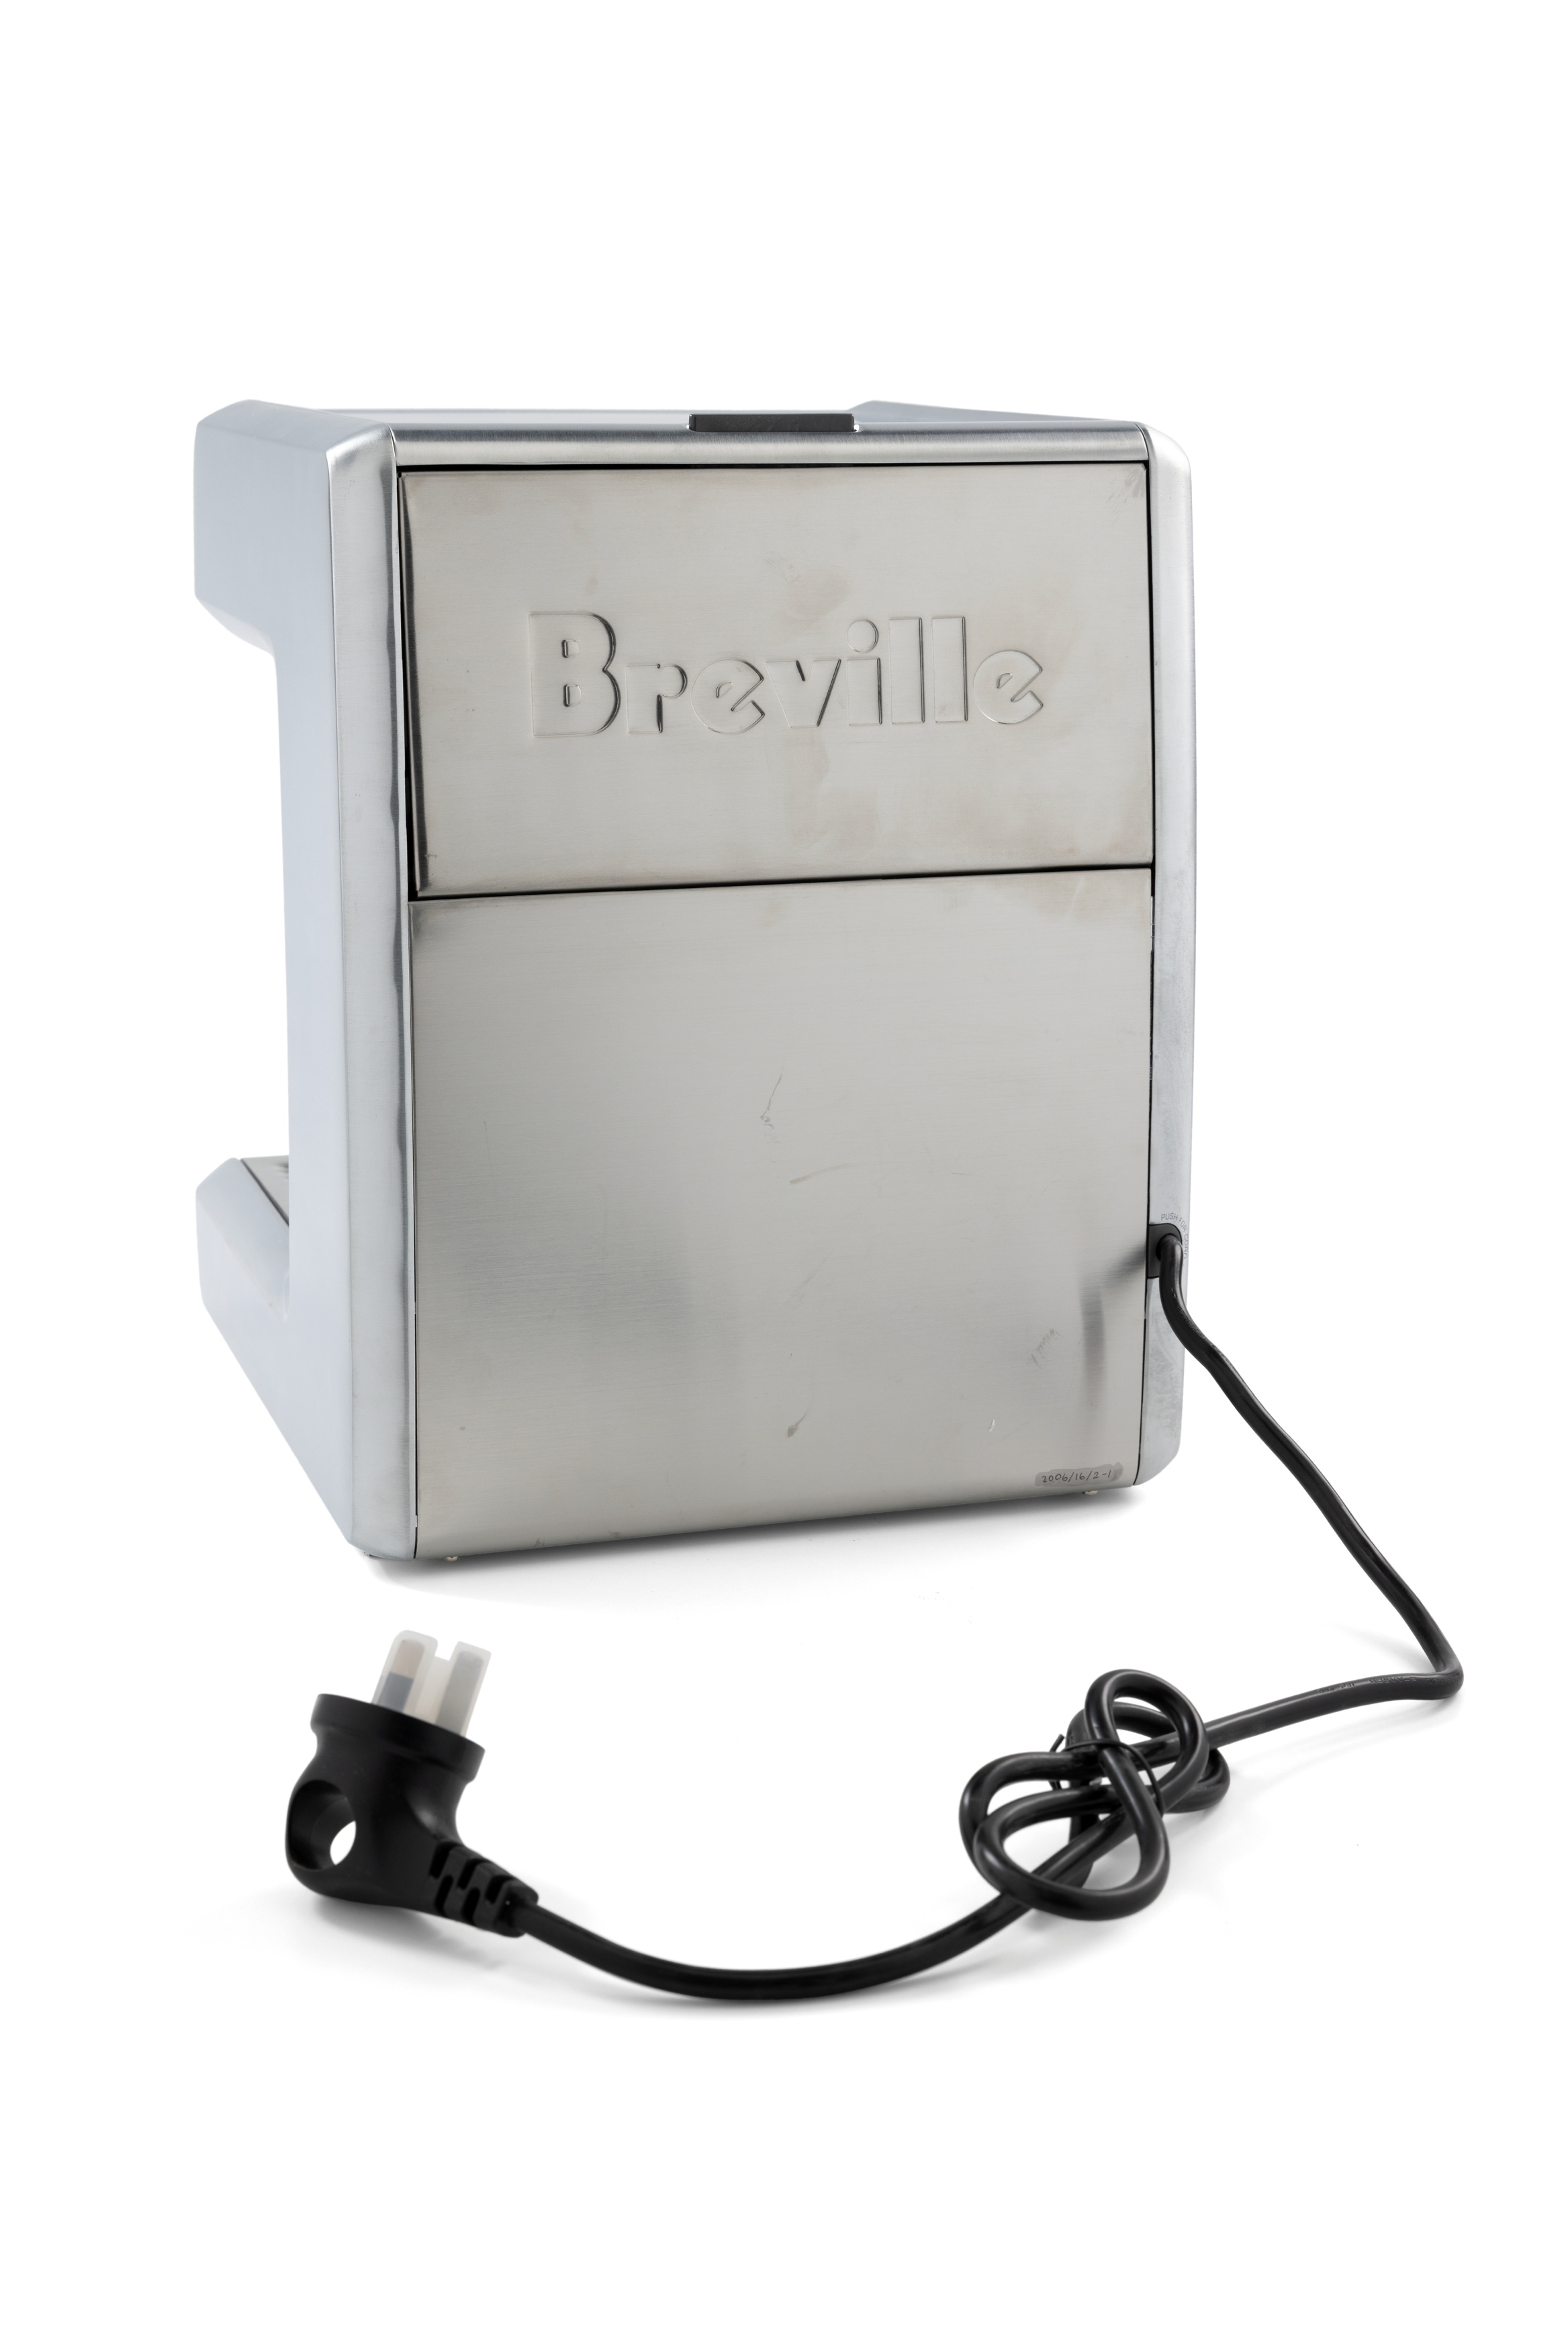 Breville 800 Class Espresso Machine and accessories